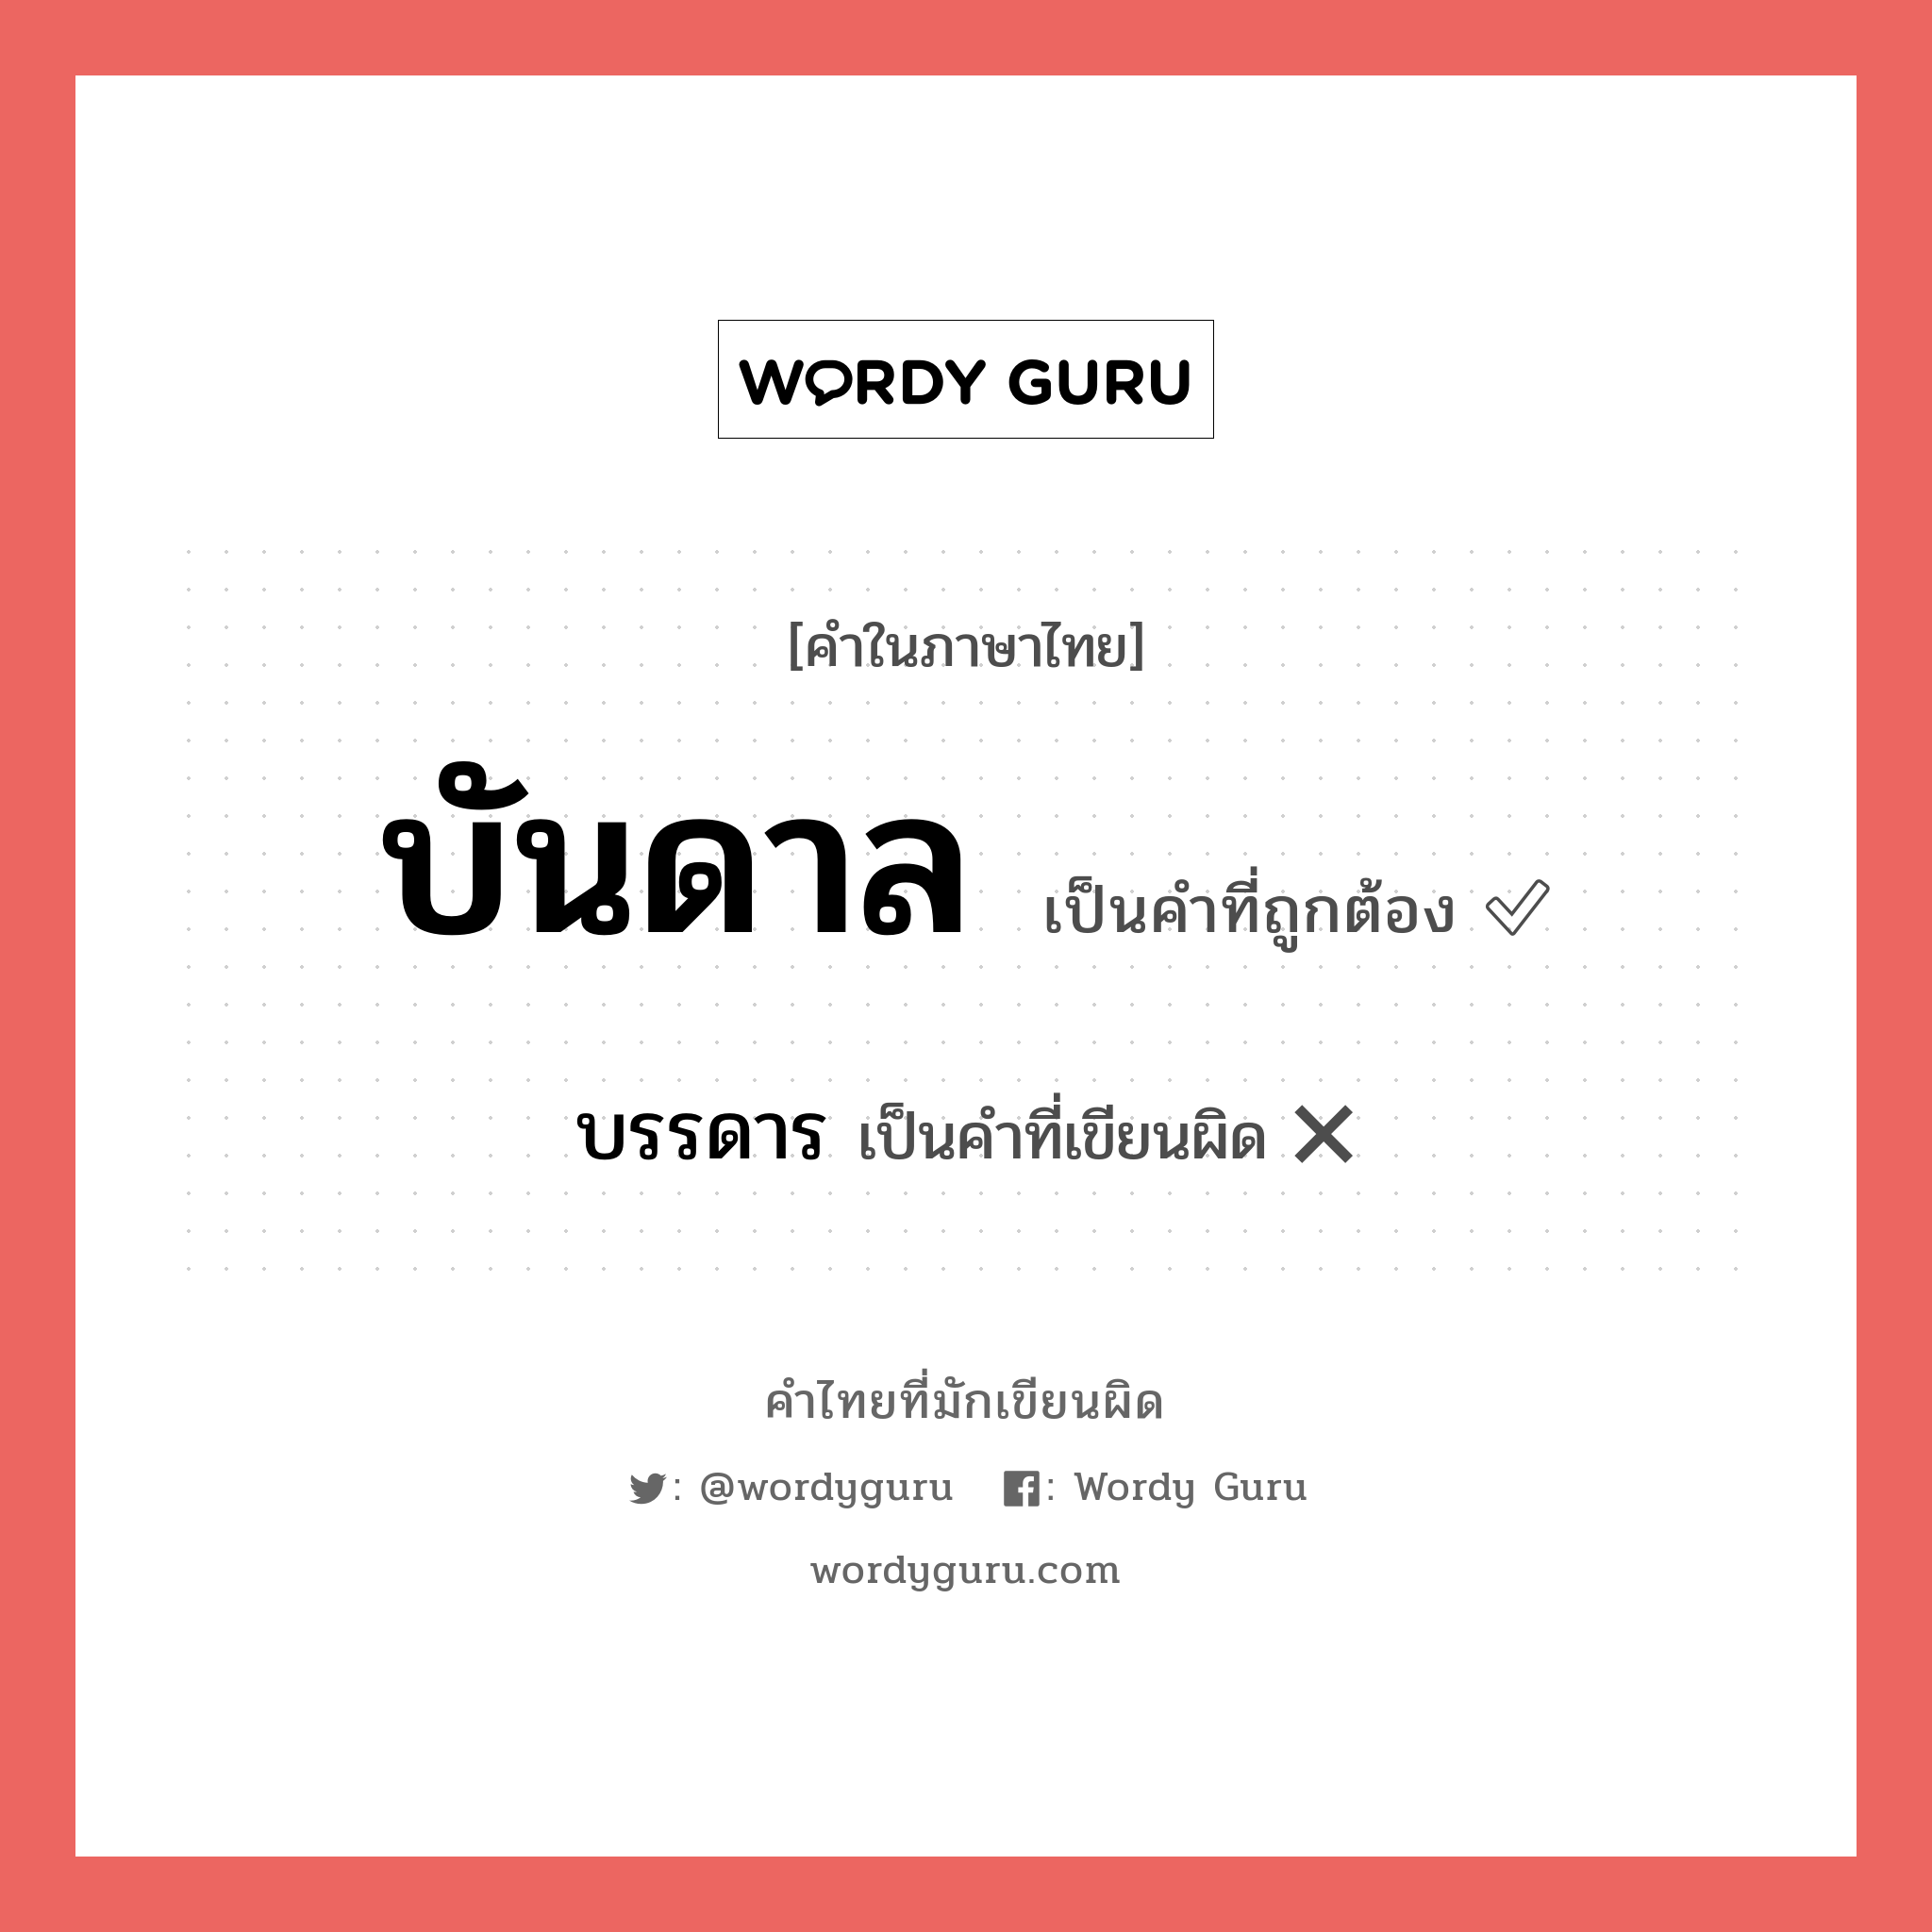 บันดาล หรือ บรรดาล เขียนยังไง? คำไหนเขียนถูก?, คำในภาษาไทยที่มักเขียนผิด บันดาล คำที่ผิด ❌ บรรดาร